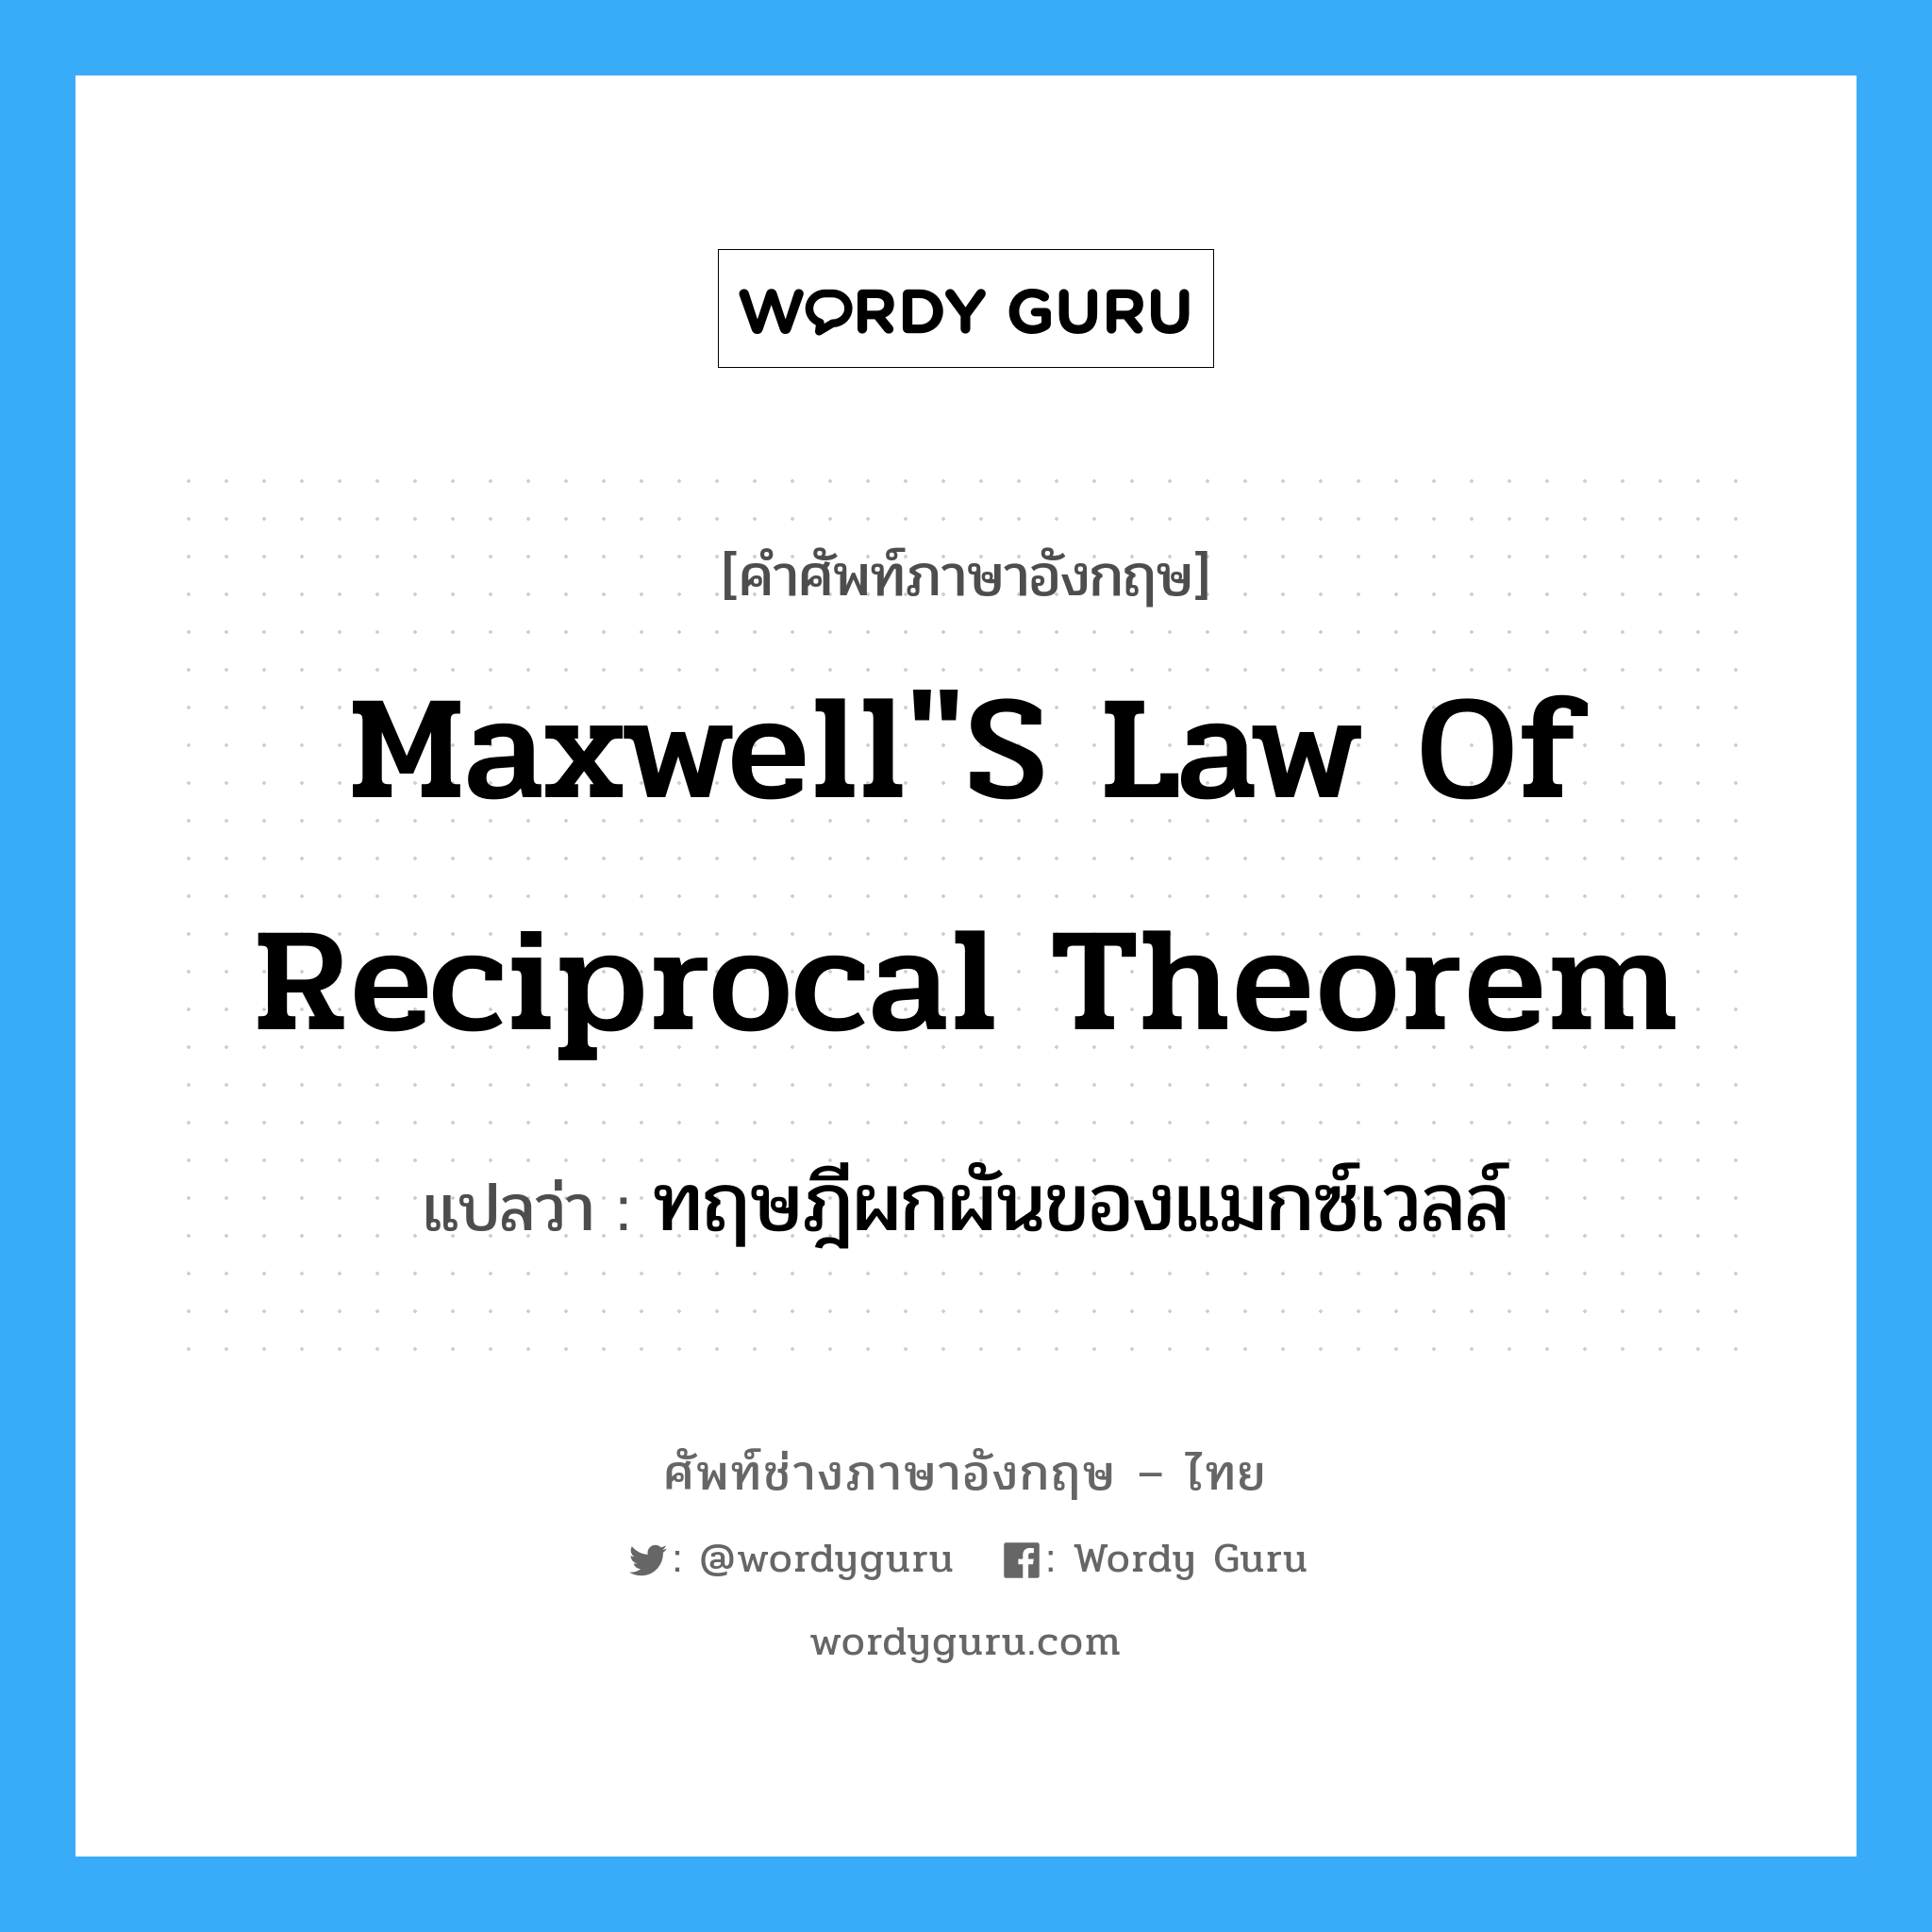 ทฤษฎีผกผันของแมกซ์เวลล์ ภาษาอังกฤษ?, คำศัพท์ช่างภาษาอังกฤษ - ไทย ทฤษฎีผกผันของแมกซ์เวลล์ คำศัพท์ภาษาอังกฤษ ทฤษฎีผกผันของแมกซ์เวลล์ แปลว่า Maxwell"s law of reciprocal theorem